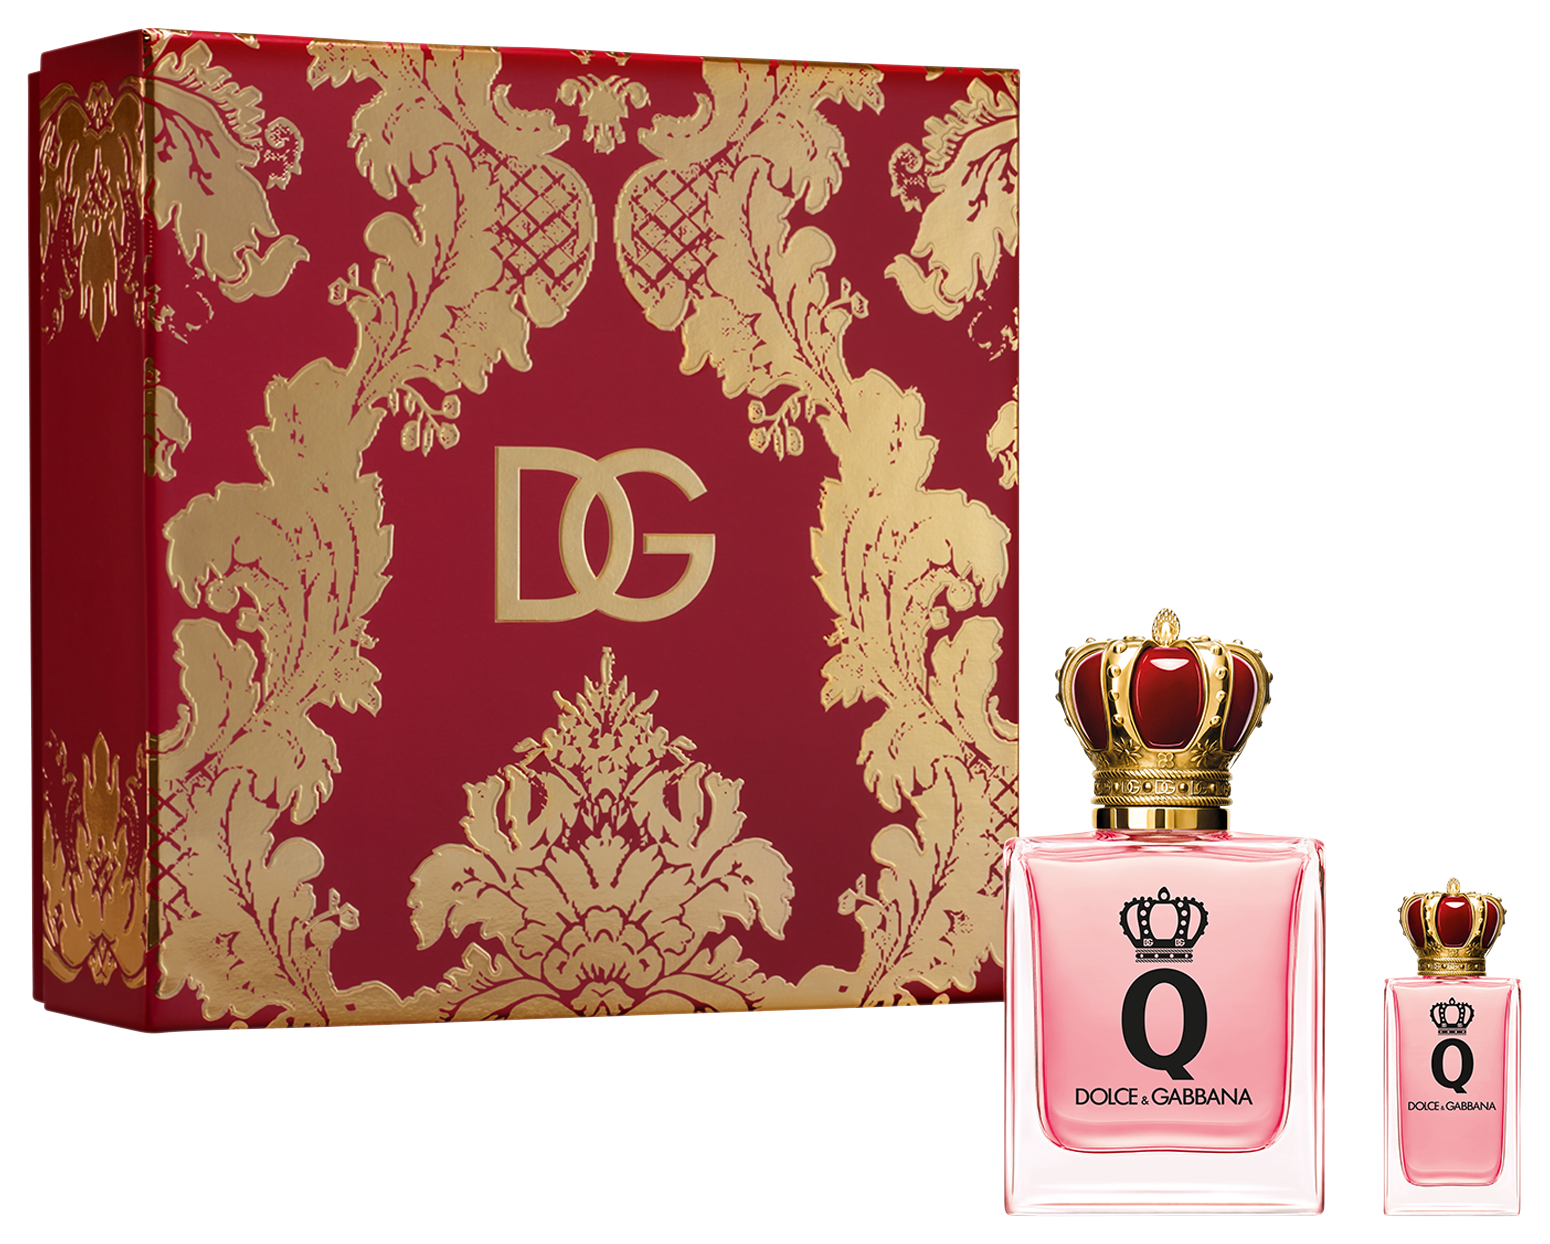 Dolce &Gabbana Q Set, EDPS 50 ml + EDPS 5 ml